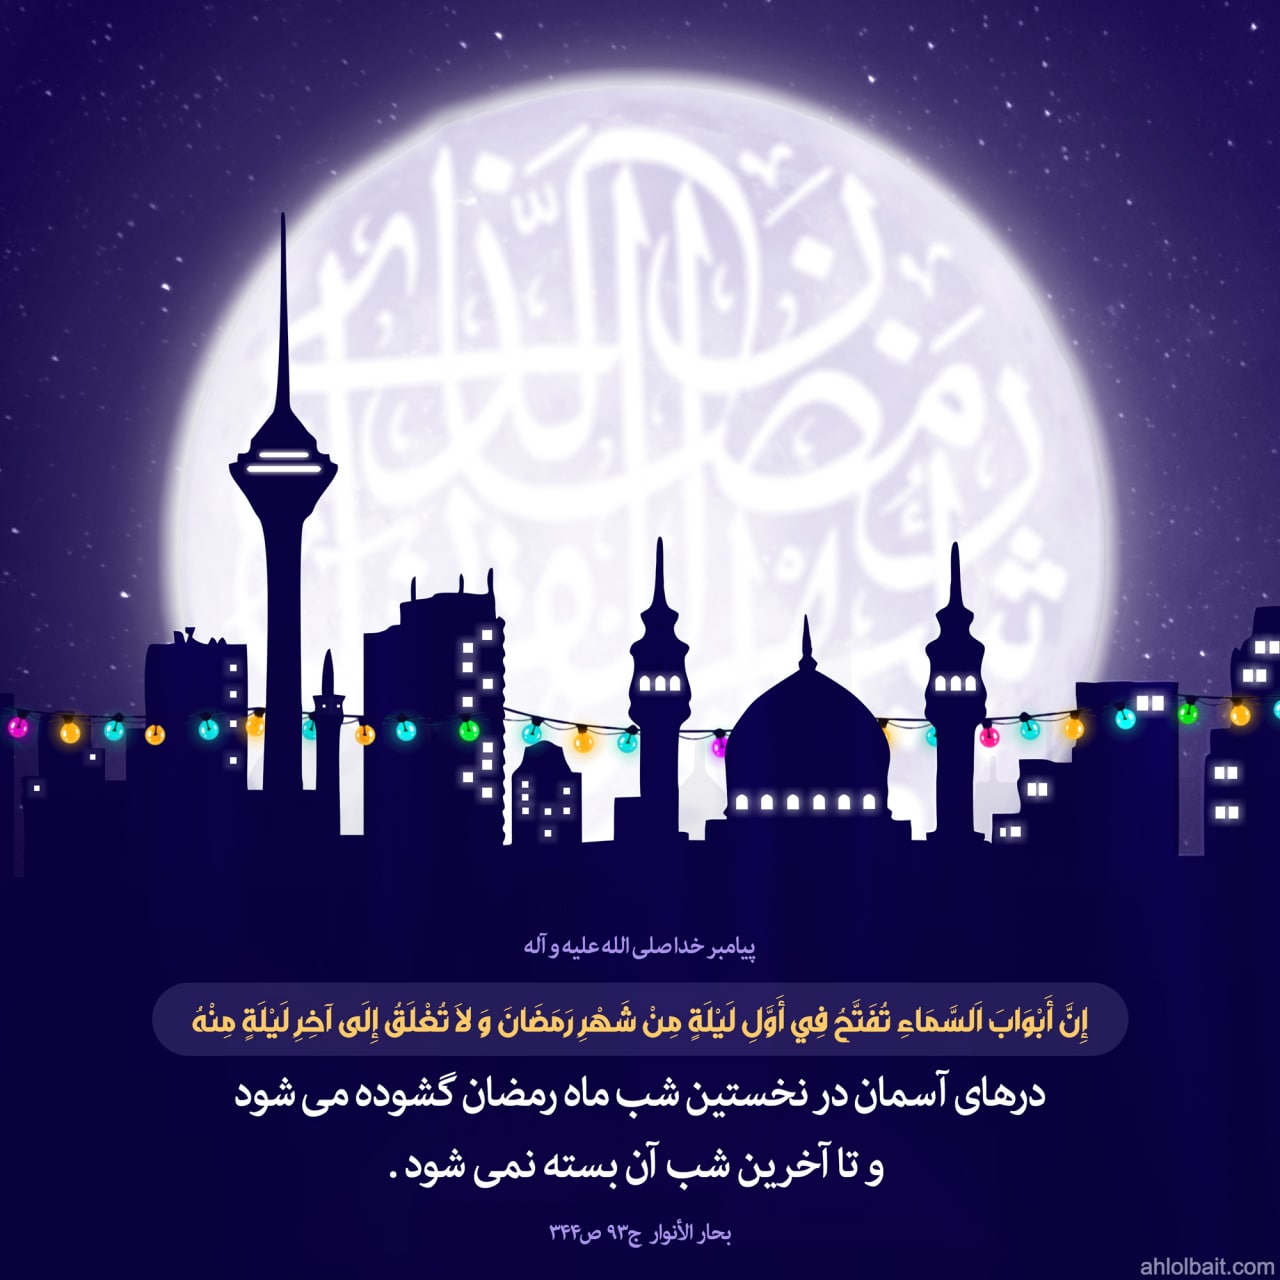 پیامبر خدا صلی الله علیه و اله : درهای آسمان در نخستین شب ماه رمضان گشوده می شود و تا آخرین شب آن بسته نمی شود .